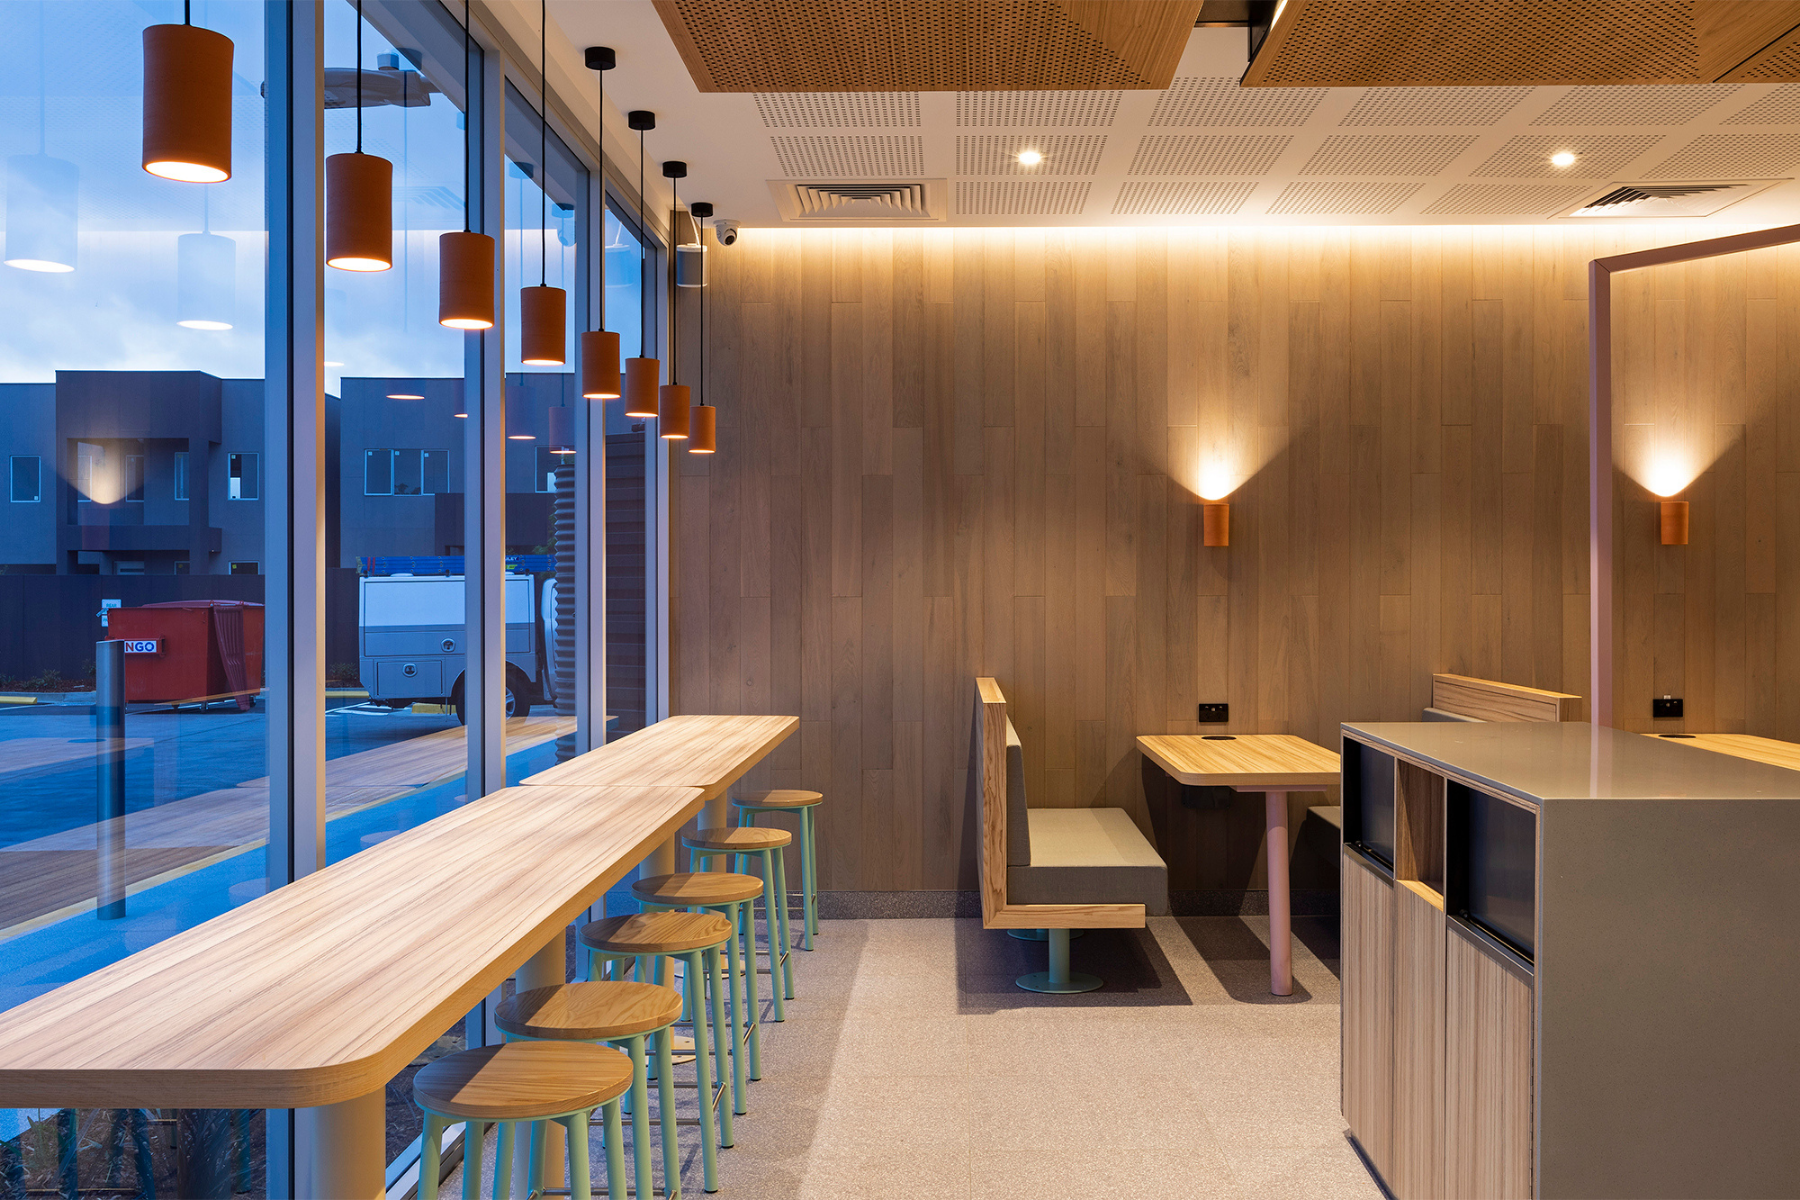 Commercial-grade furniture décor elements - McDonald's